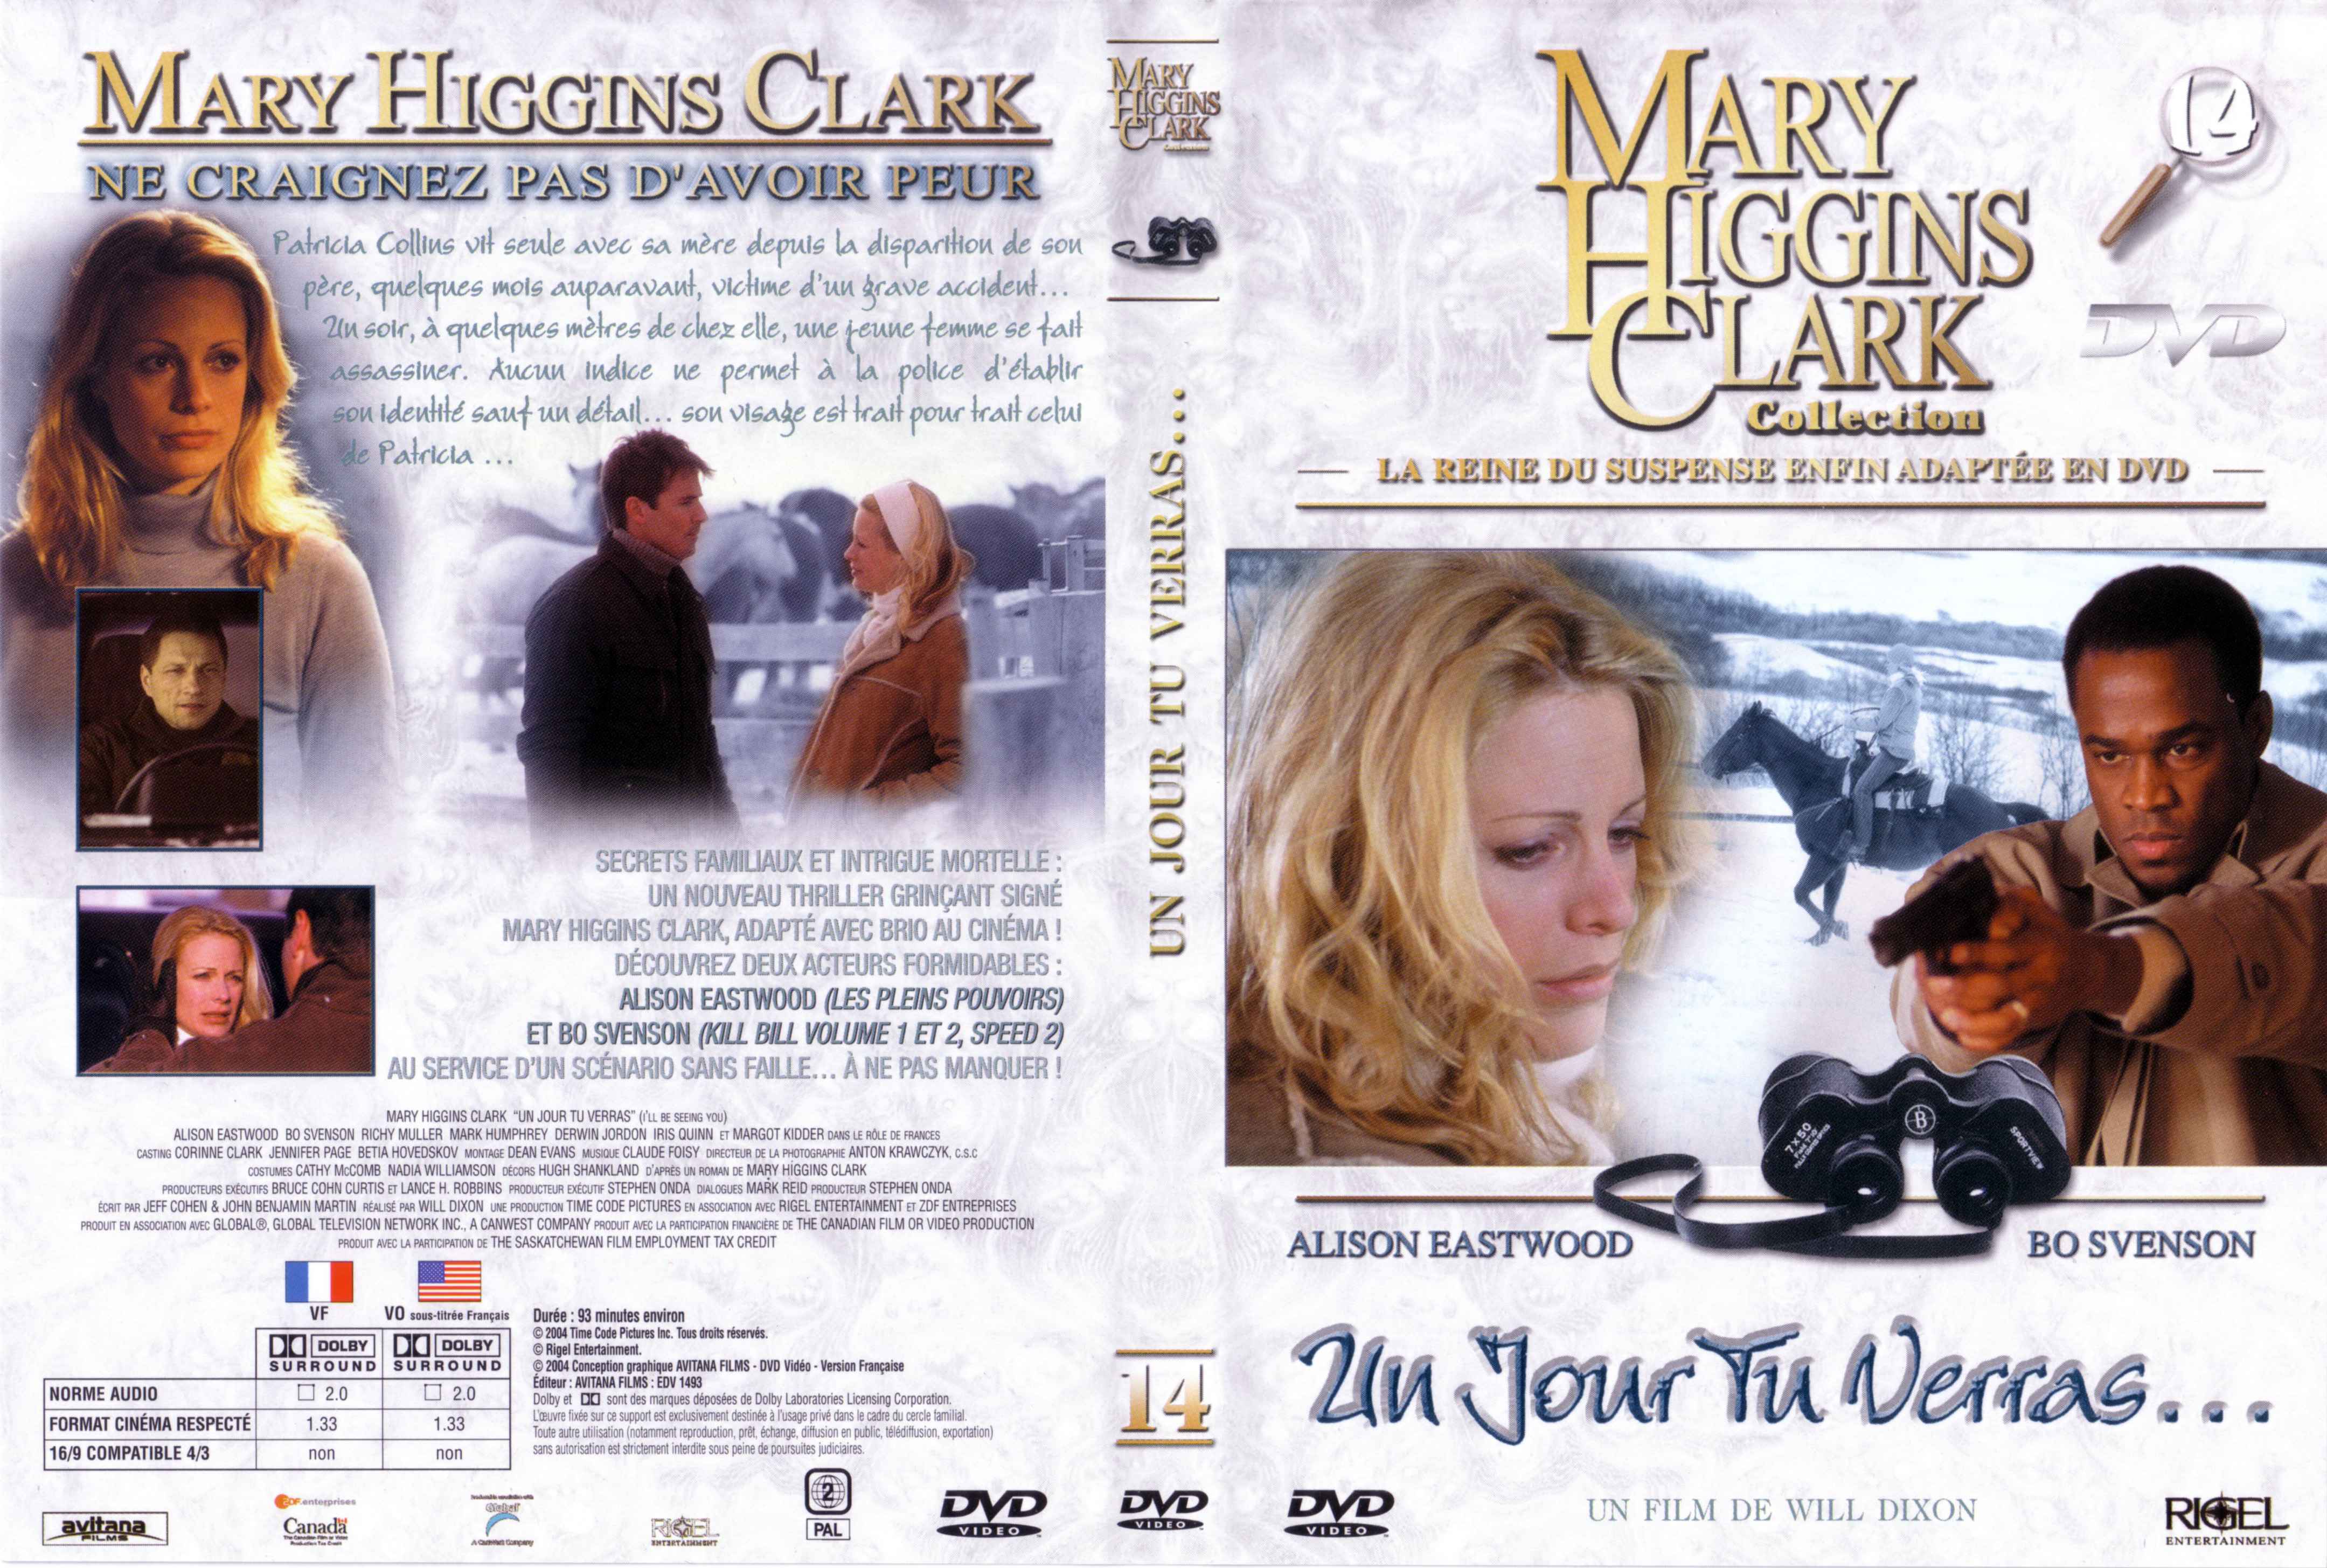 Jaquette DVD de Mary Higgins Clark vol 14 - Un jour tu verras - Cinéma Passion